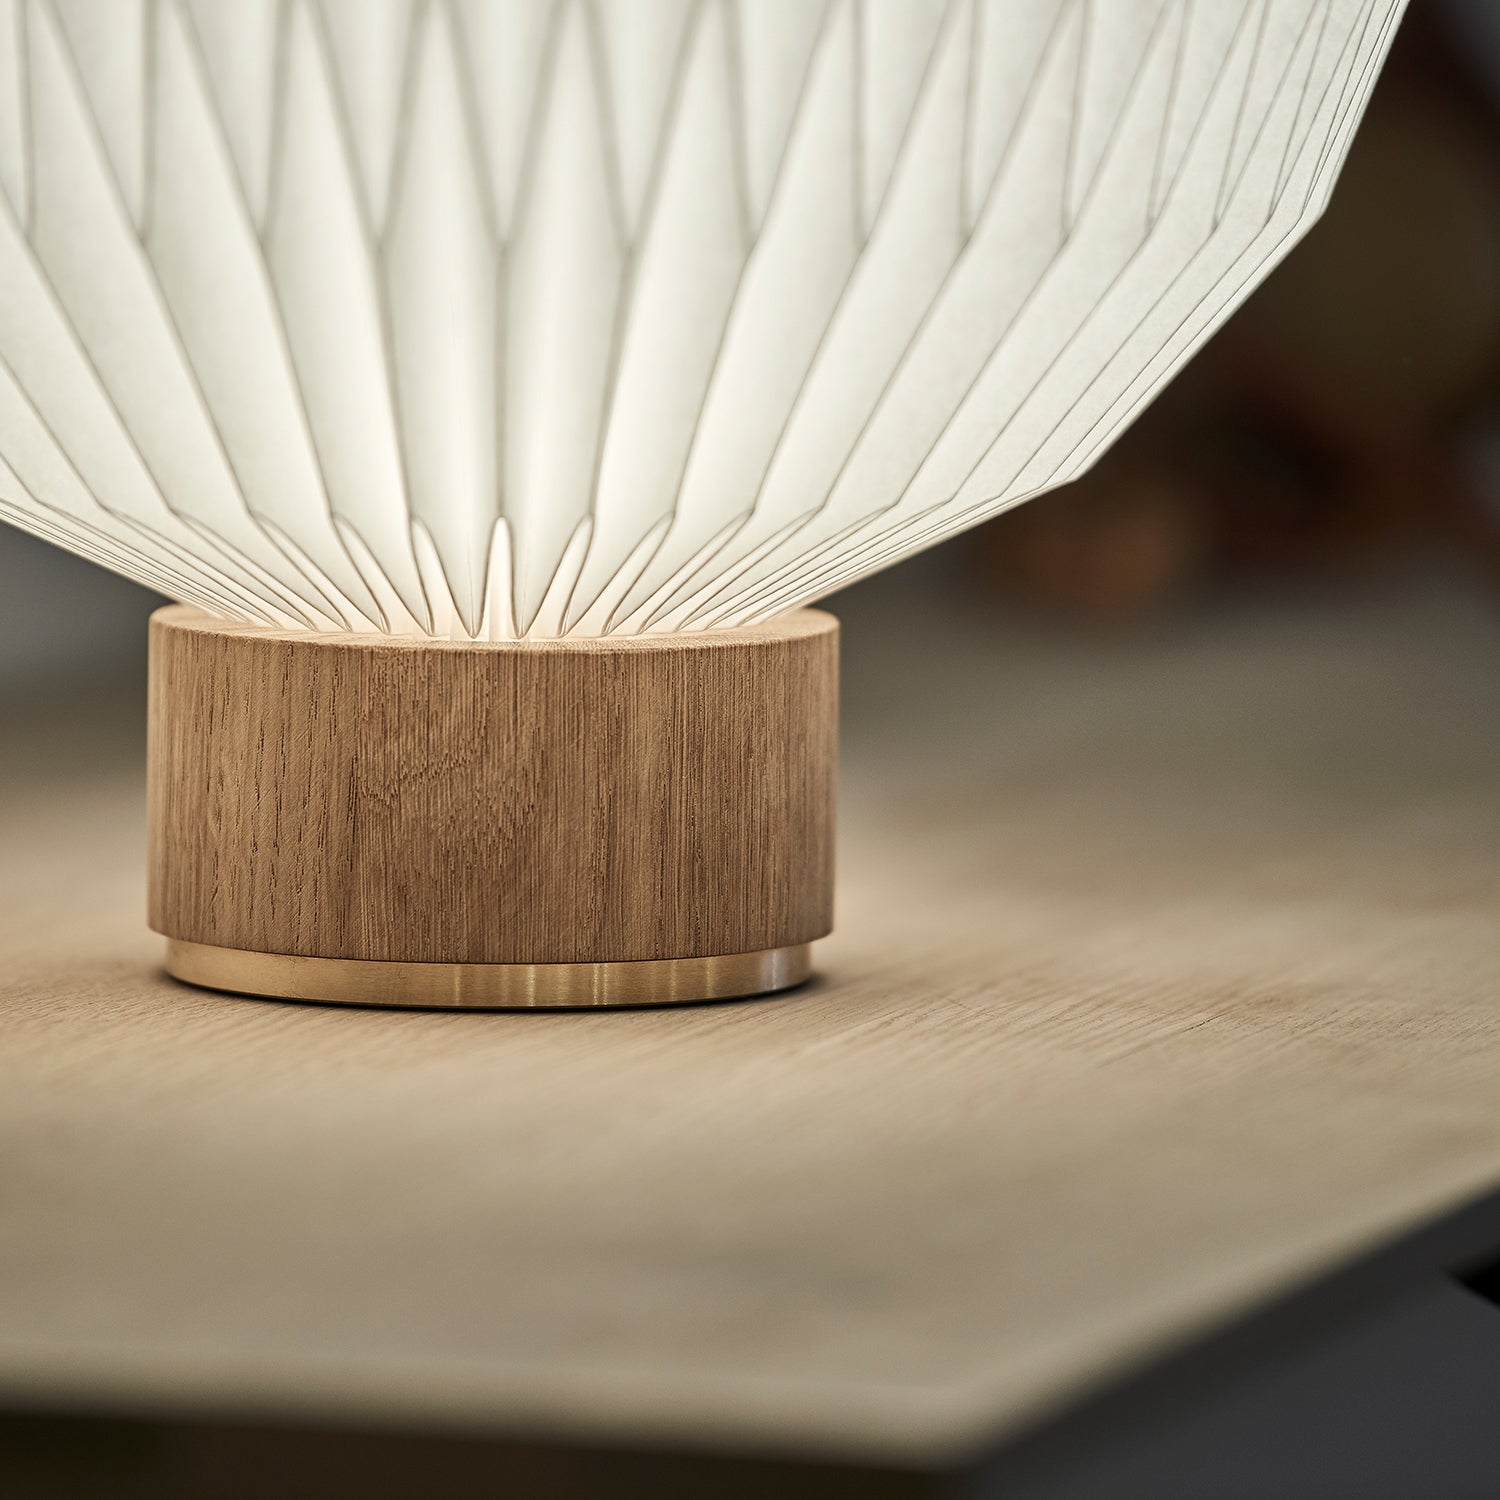 Le Klint 375 Table Lamp - The Design Choice